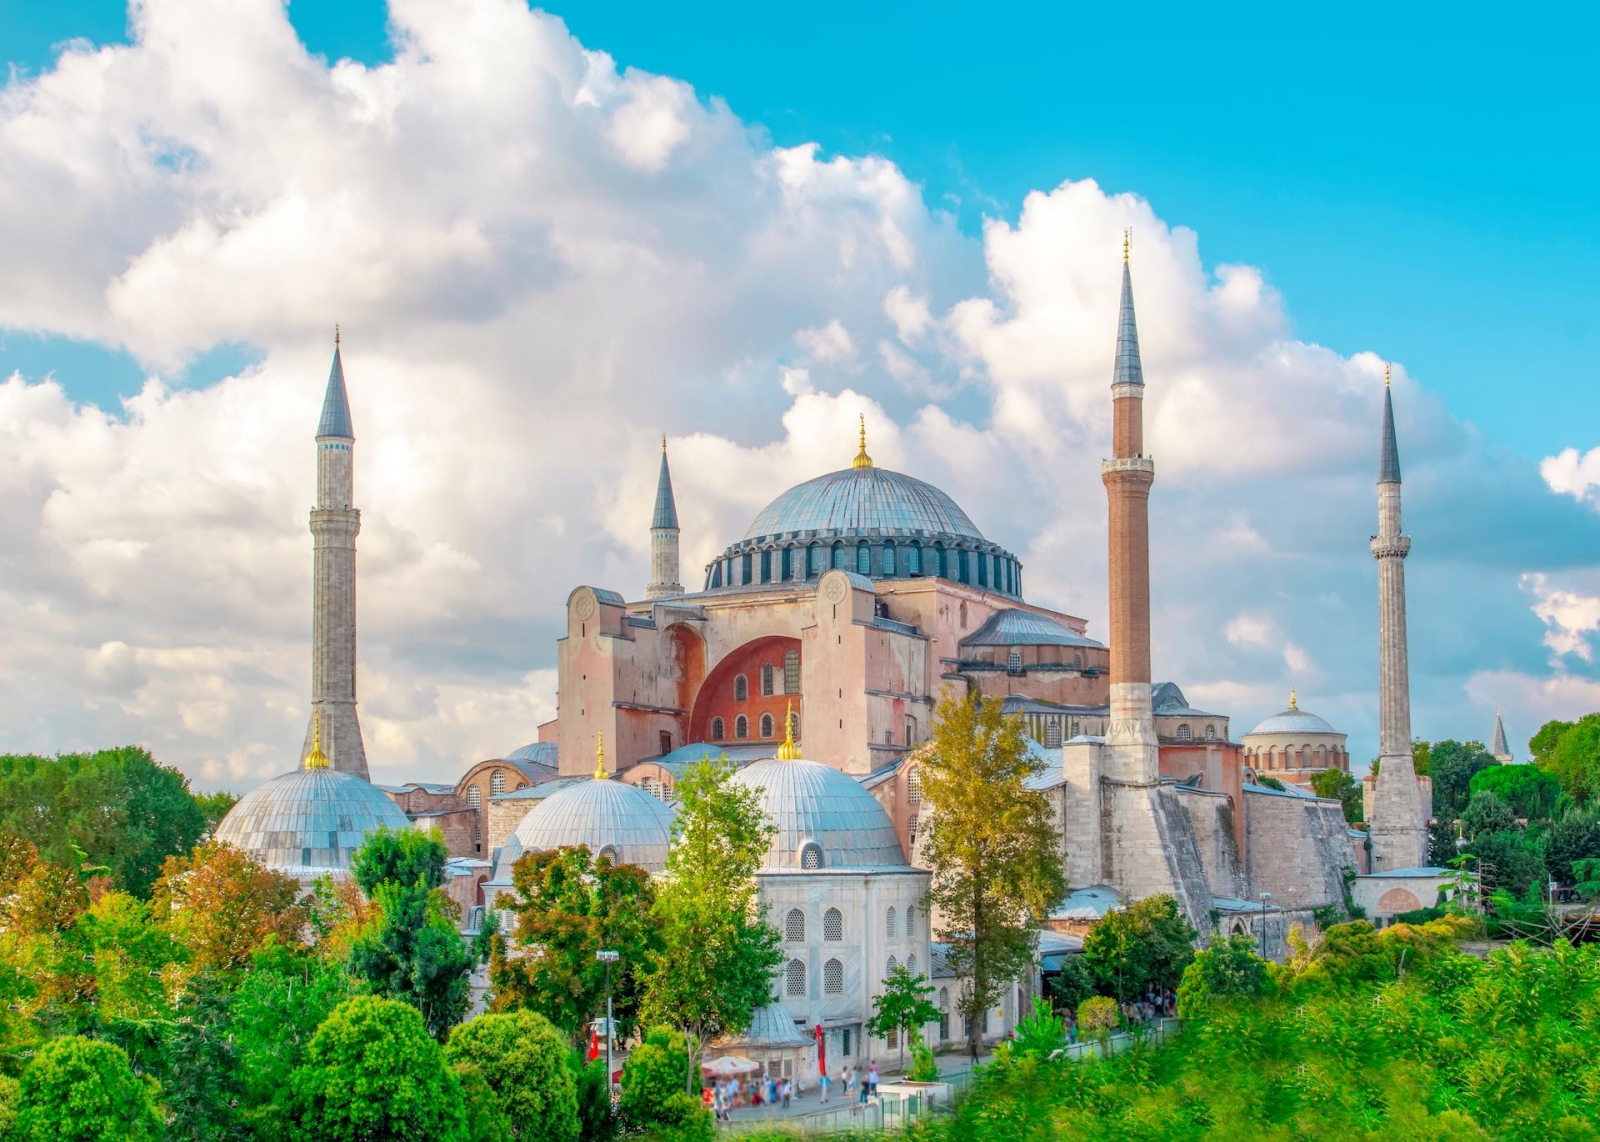 Hagia Sophia Museum in Eminonu, istanbul, Turkey